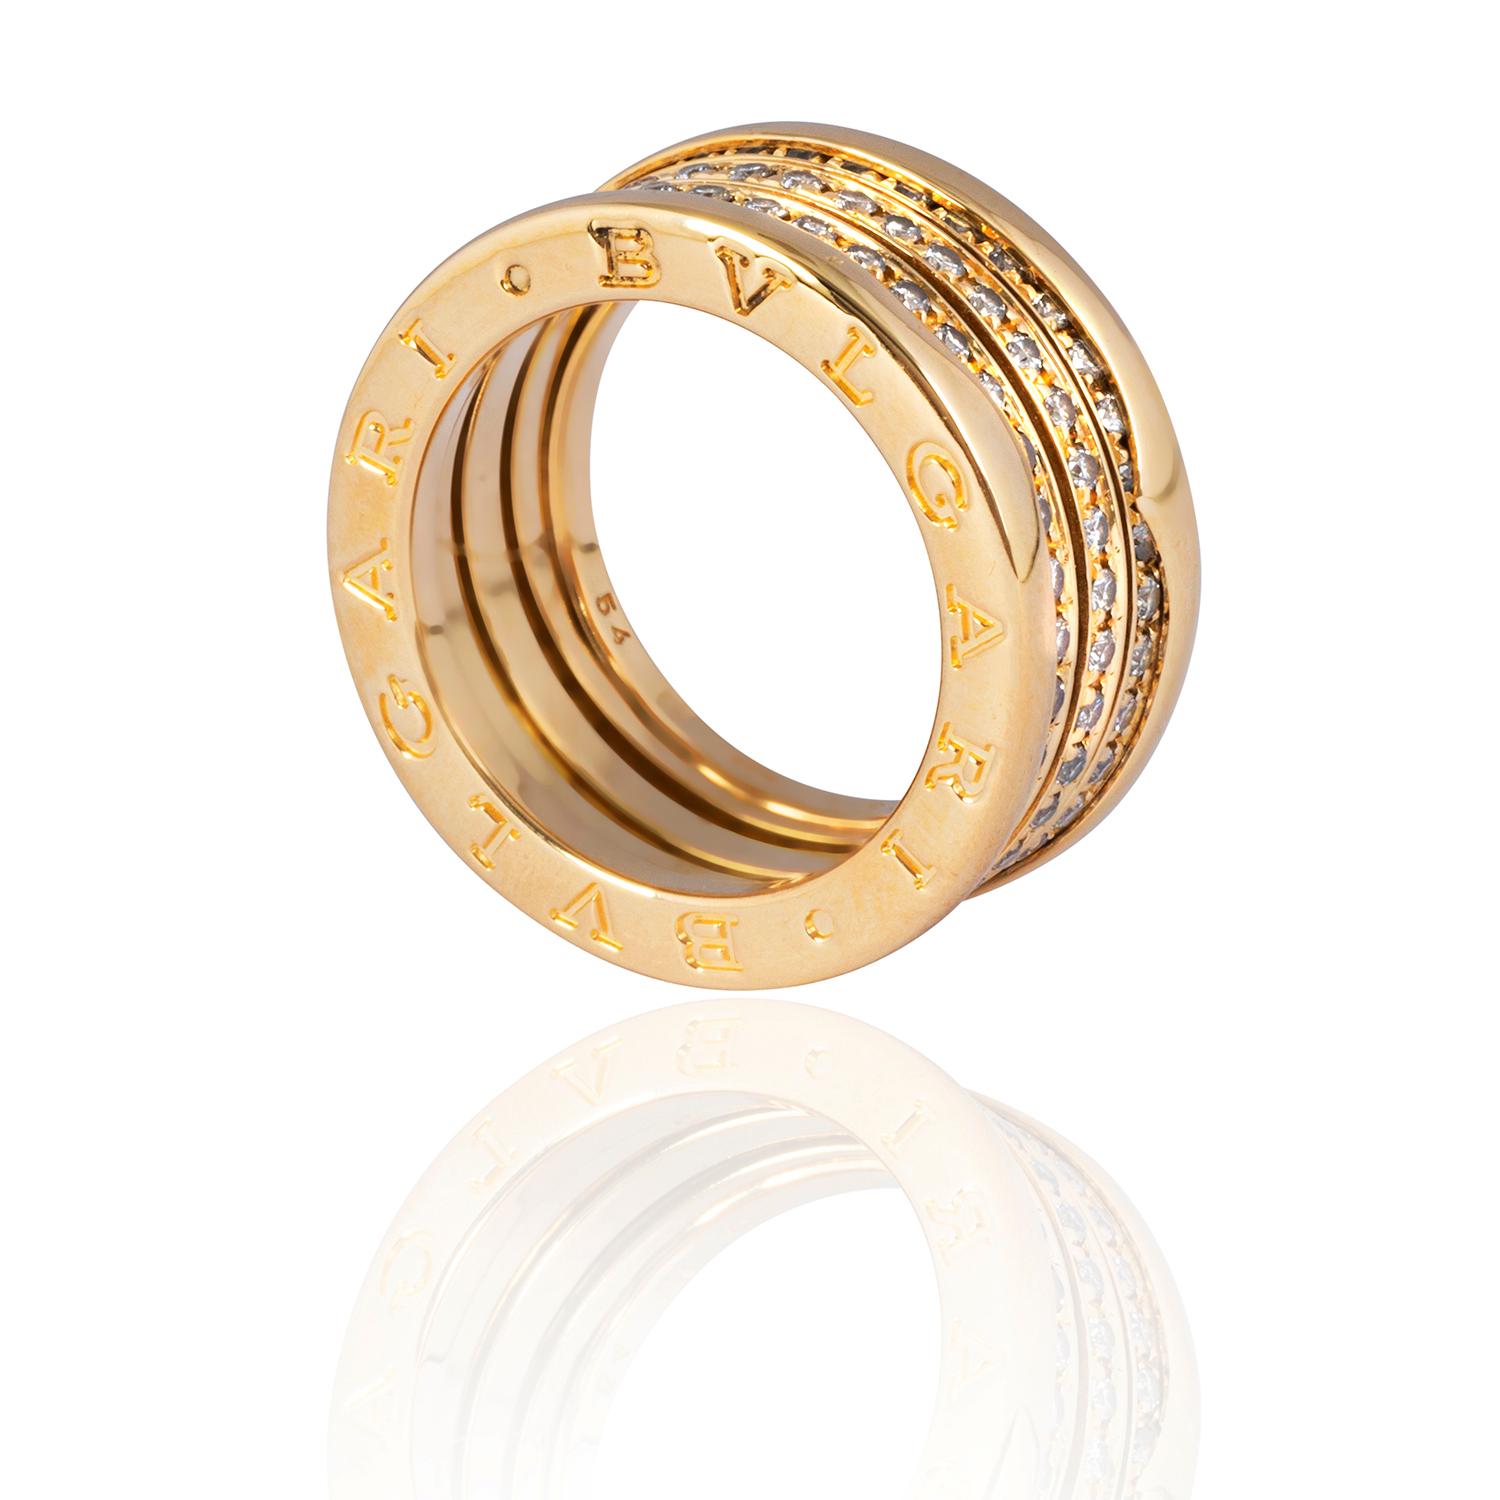 Dieser kultige Bulgari-Statement-Ring ist mit mehreren gefederten Bändern versehen, die rundum mit glitzernden runden Diamanten im Brillantschliff besetzt sind.  Dieser breite Ring mit drei zentralen, mit Steinen besetzten Bändern, die von zwei